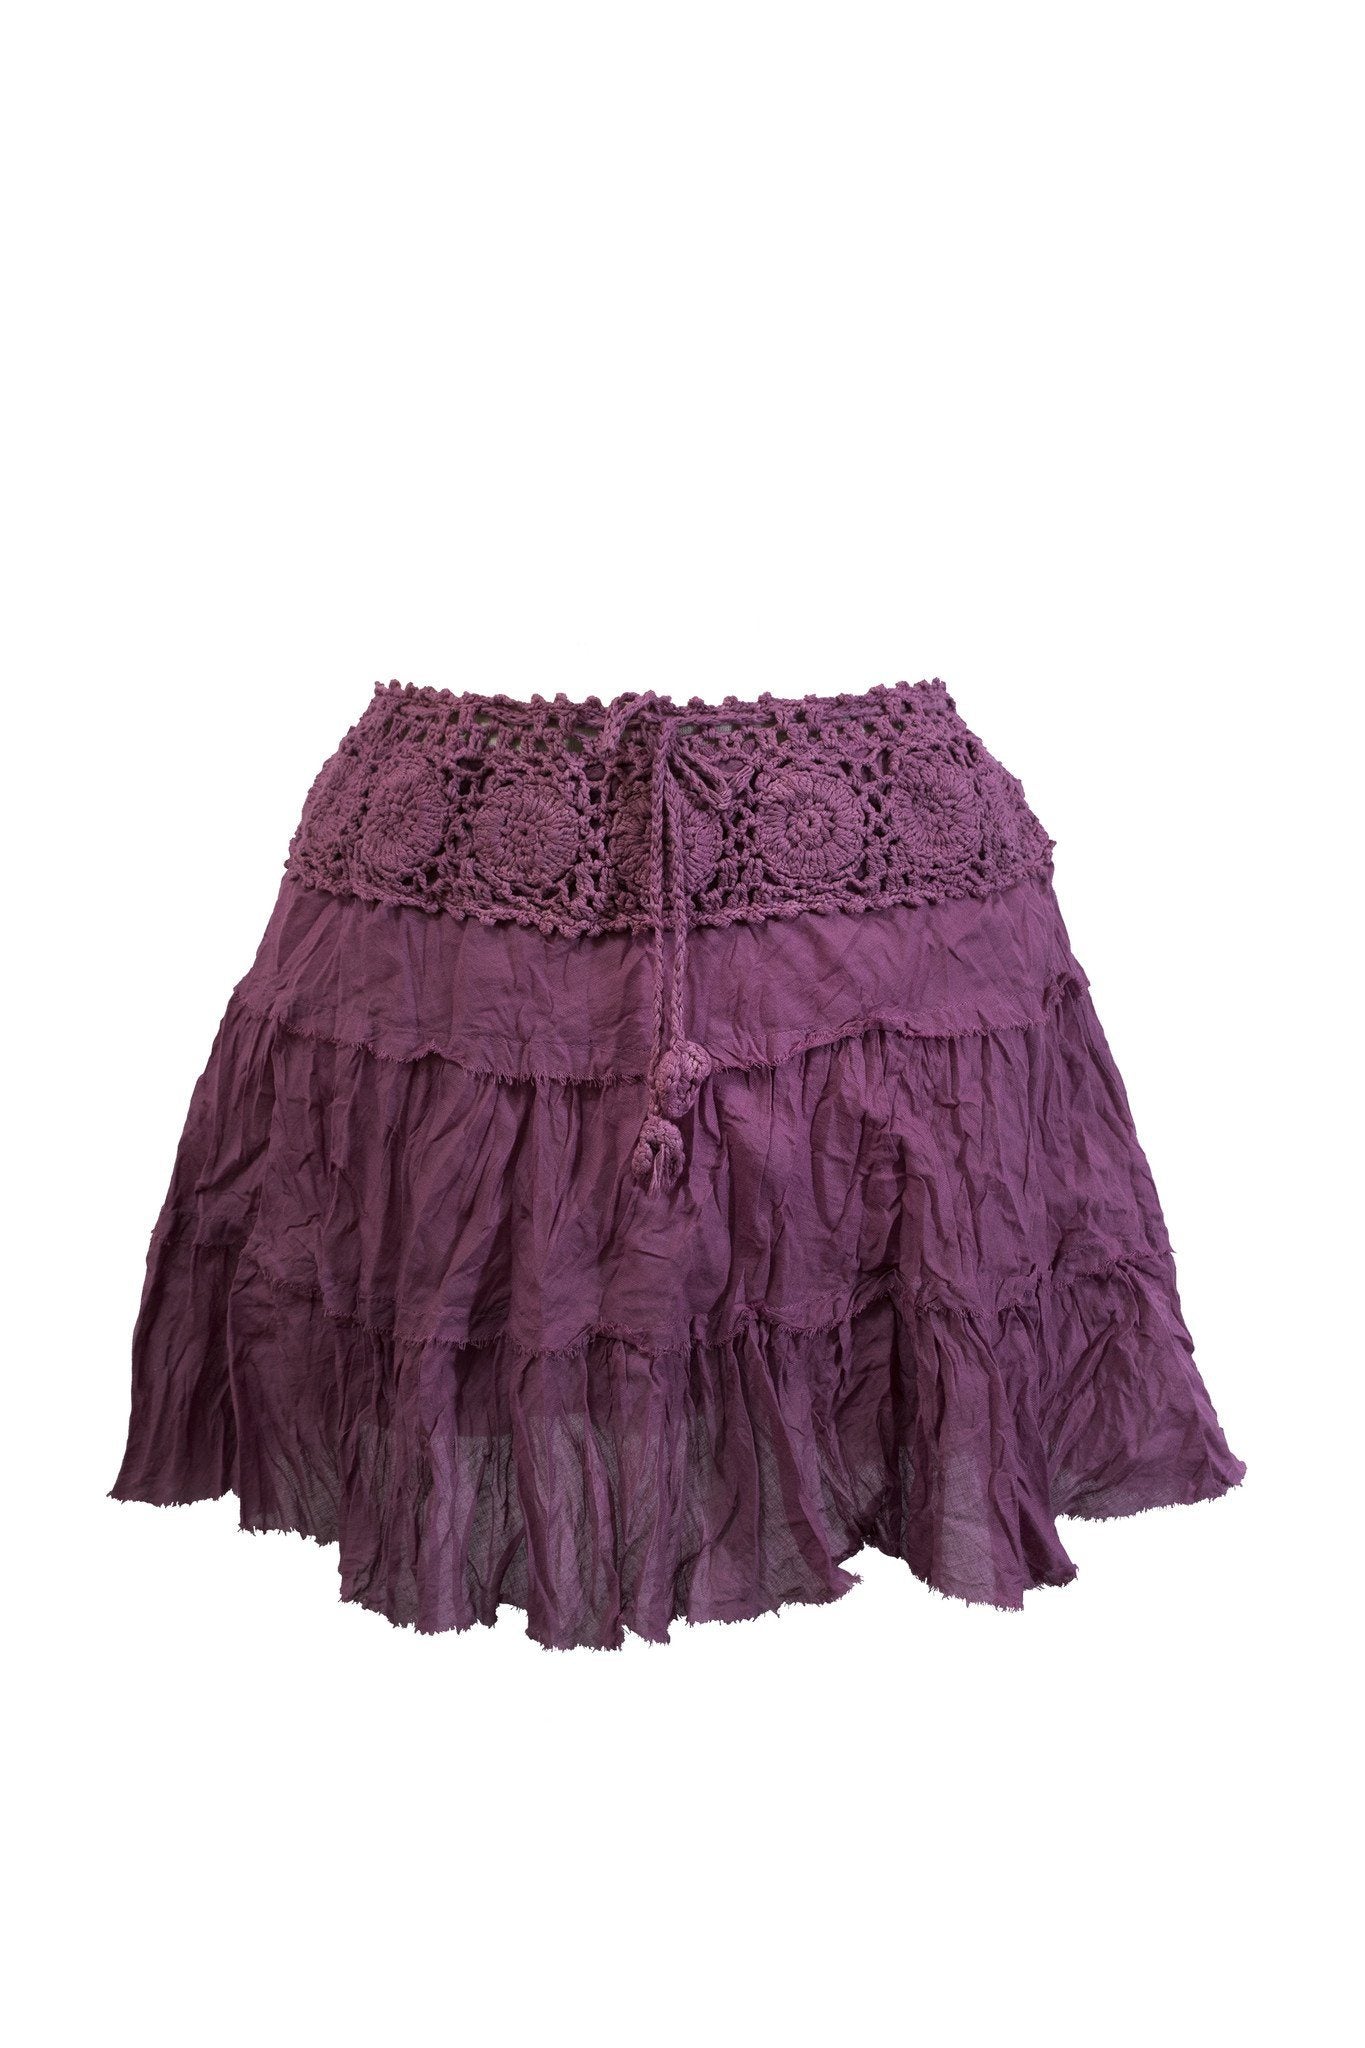 Short Skirt B Cotton with Crochet Waist - CCCollections